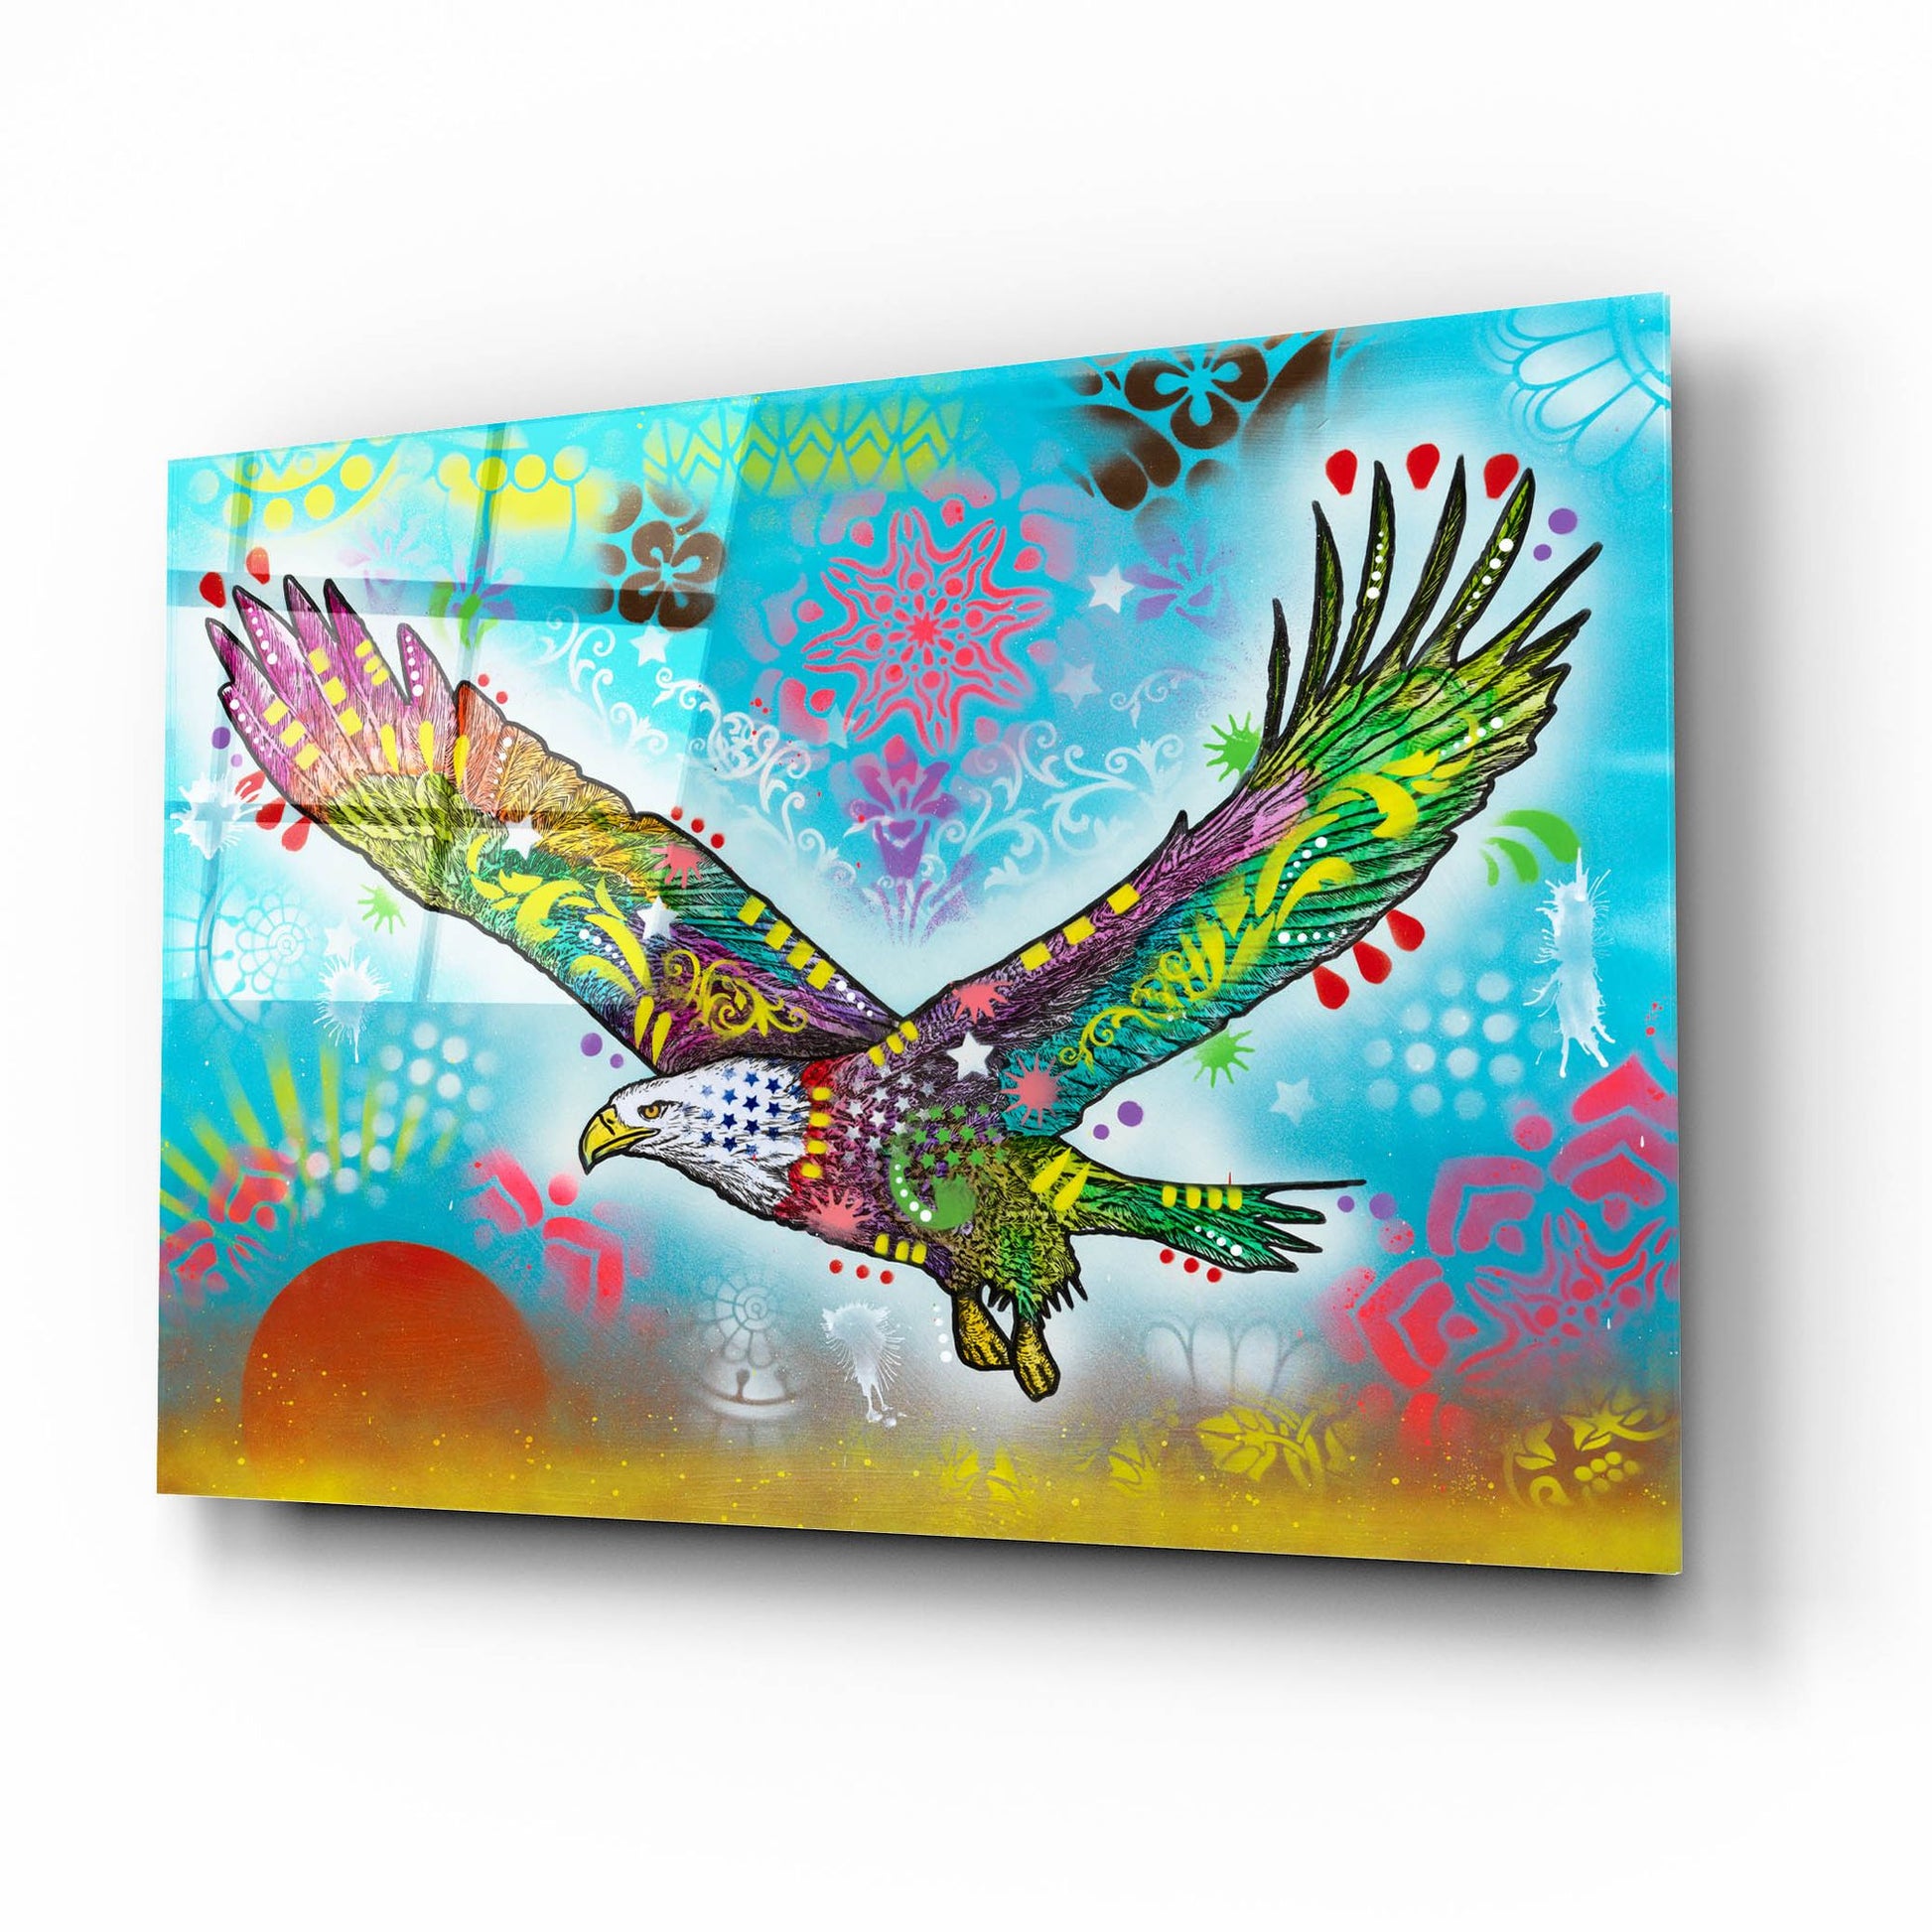 Epic Art 'In Flight' by Dean Russo, Acrylic Glass Wall Art,16x12